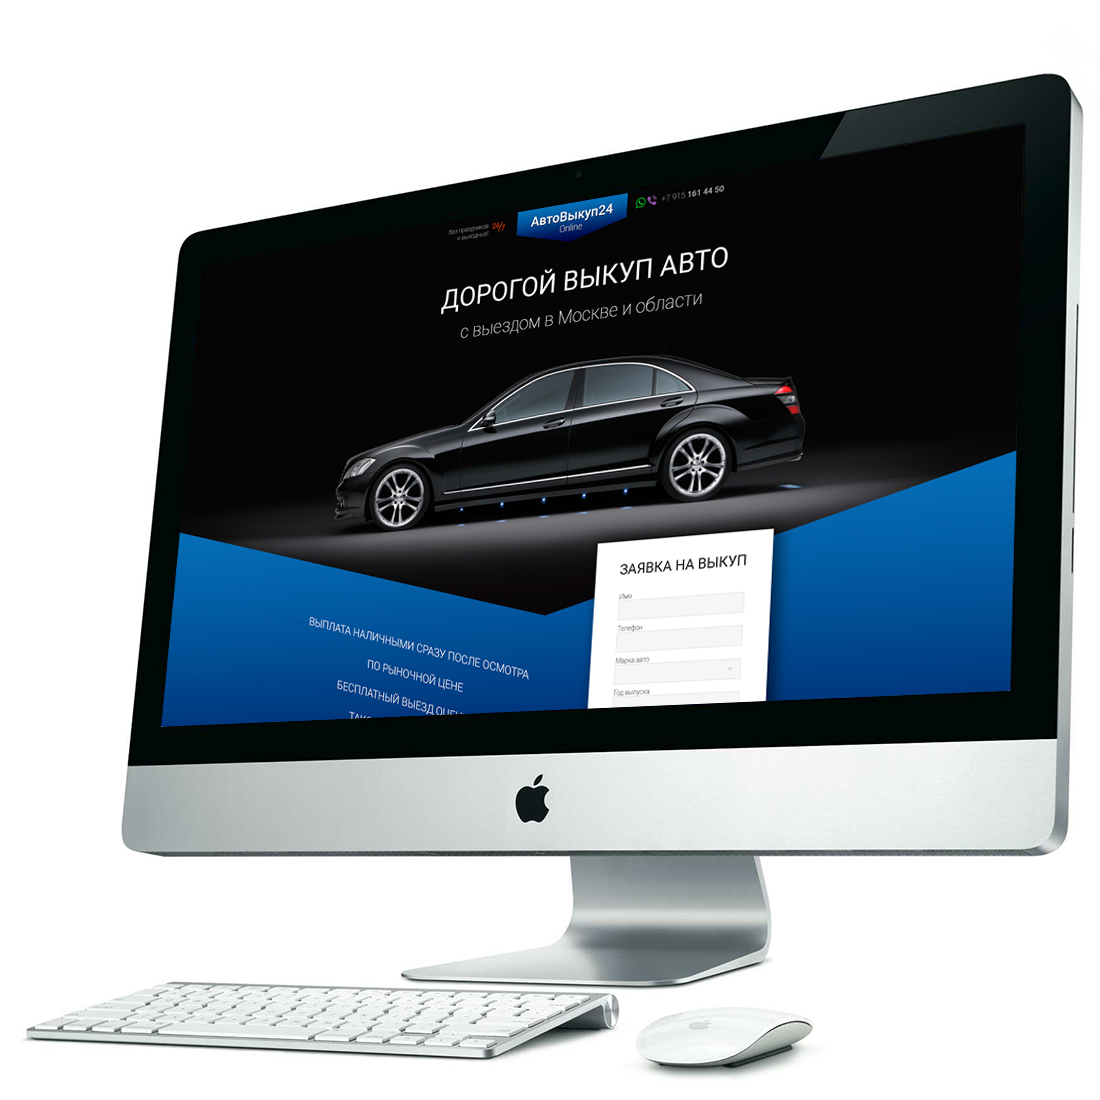 Дизайн Landing Page для выкупа автомобилей